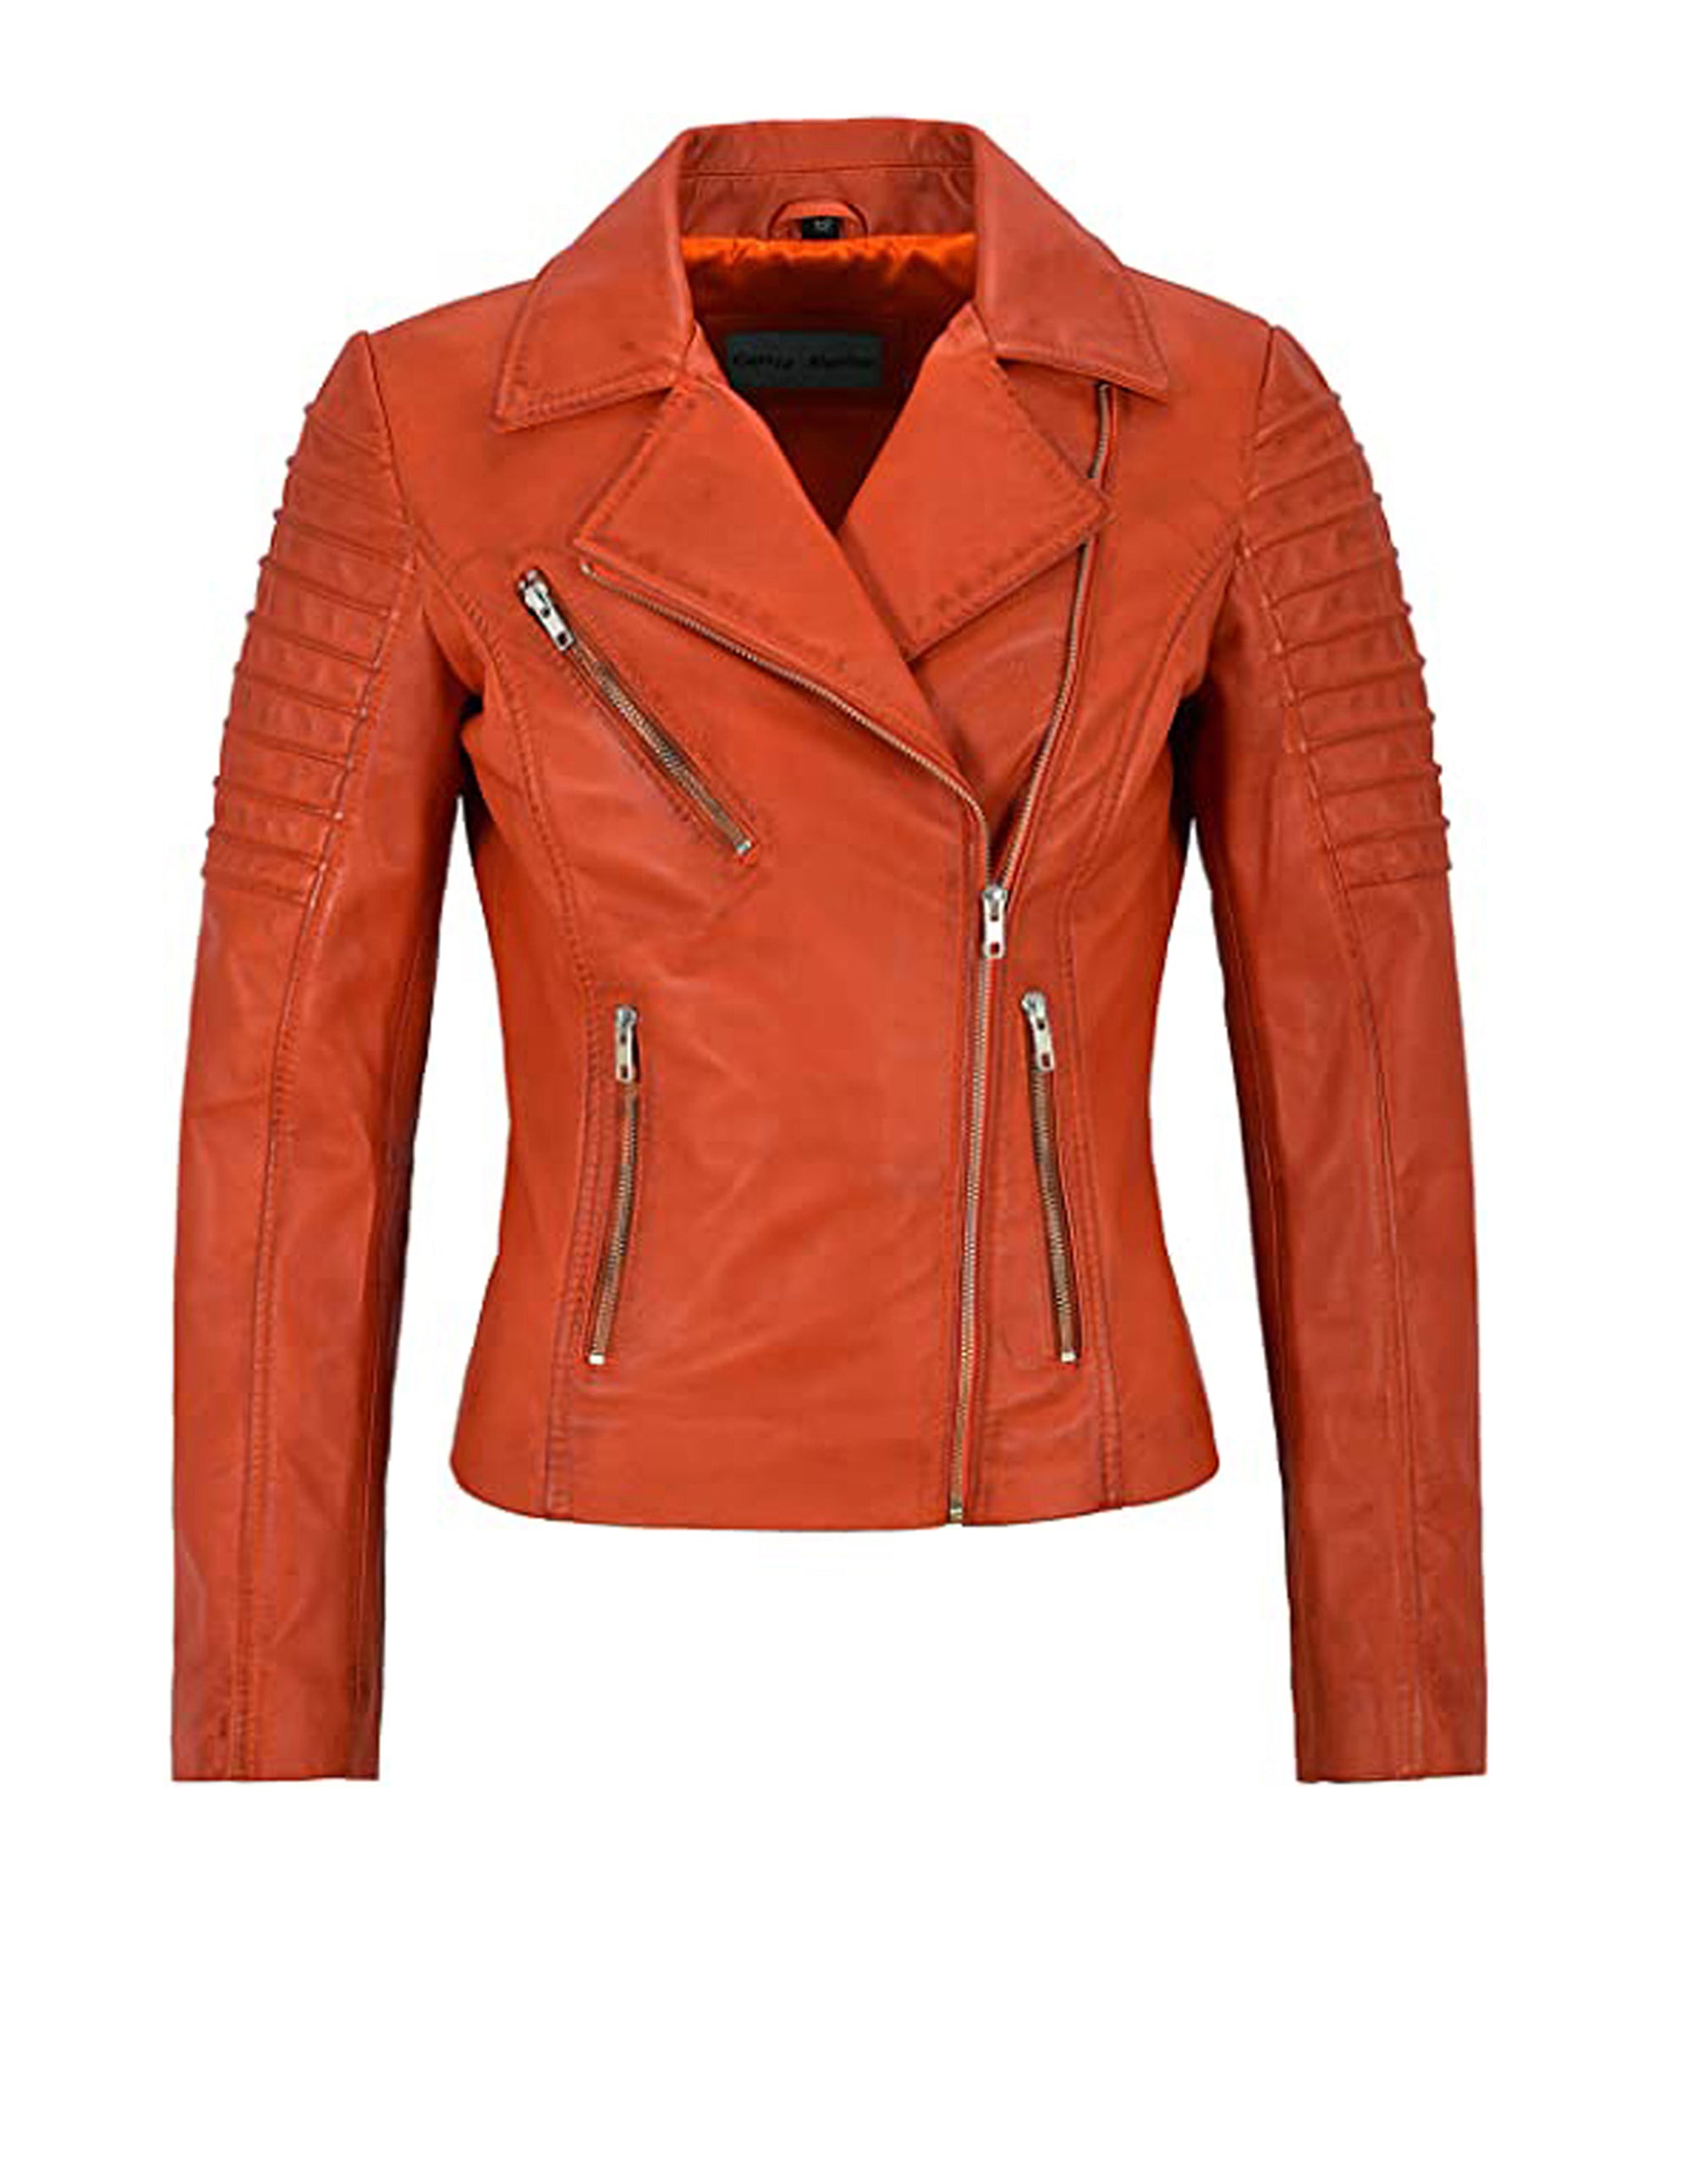 Women's Waxed Red Biker Motorcycle Sheepskin Leather Jacket